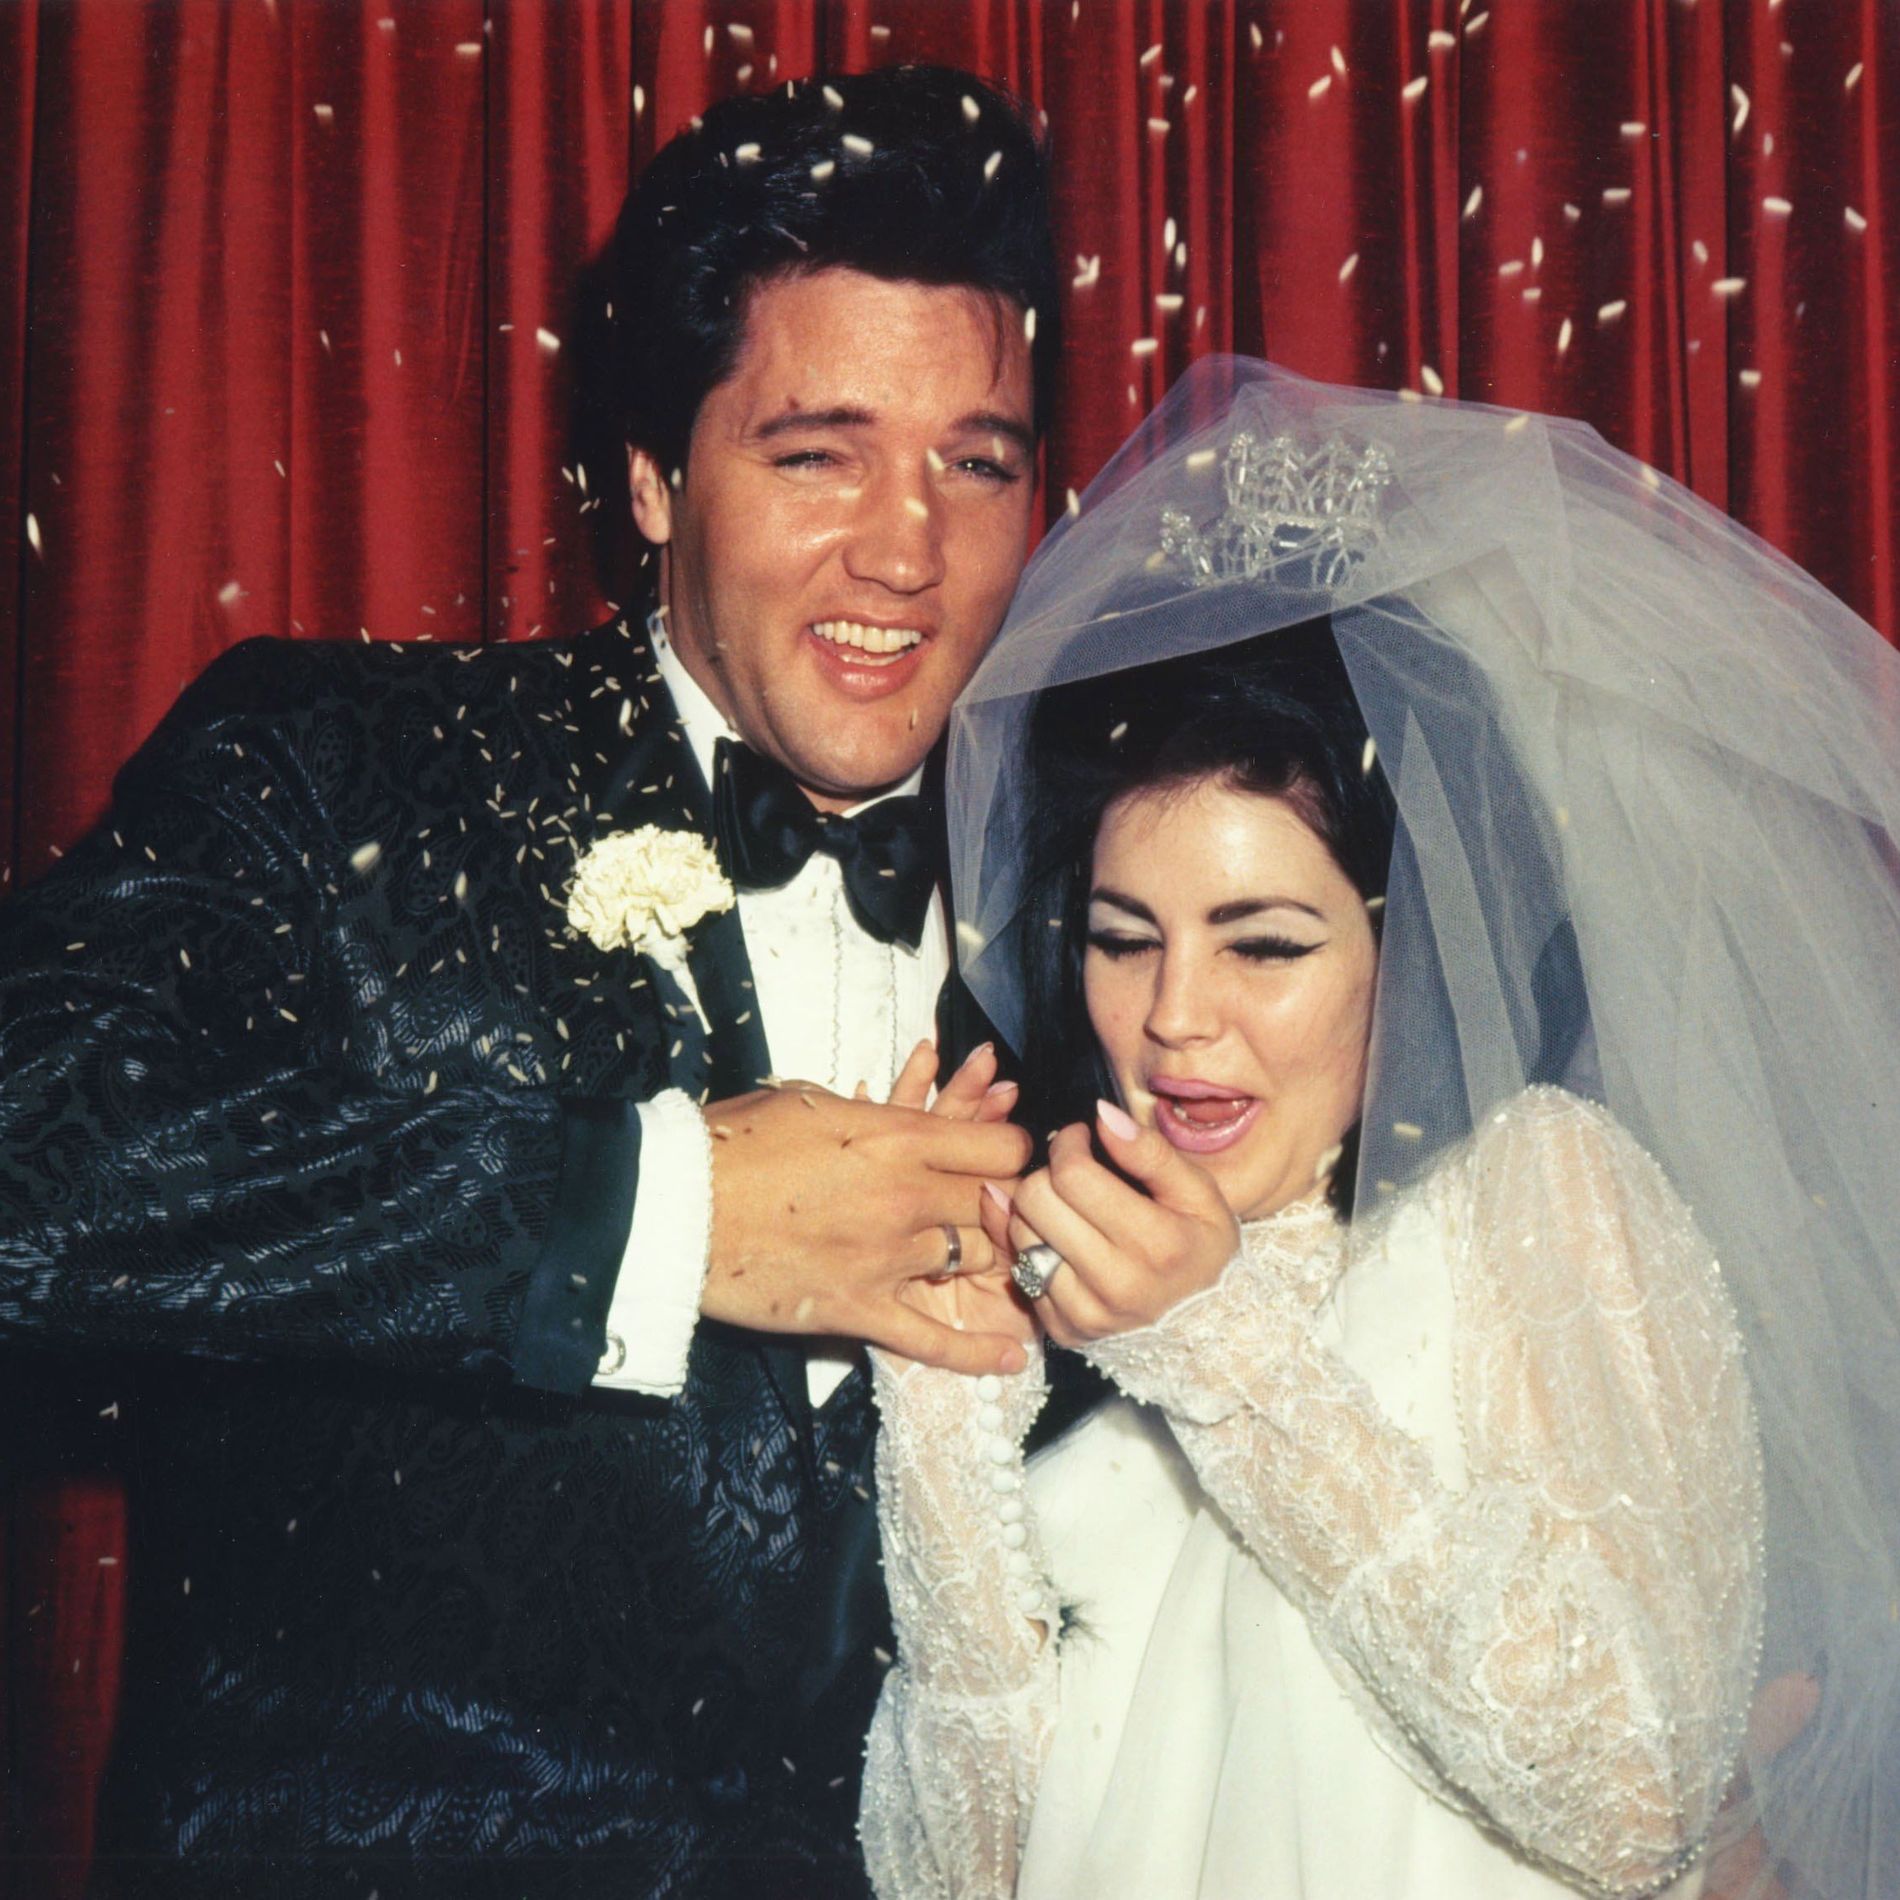 Elvis Presley and Priscilla Presley wedding photo